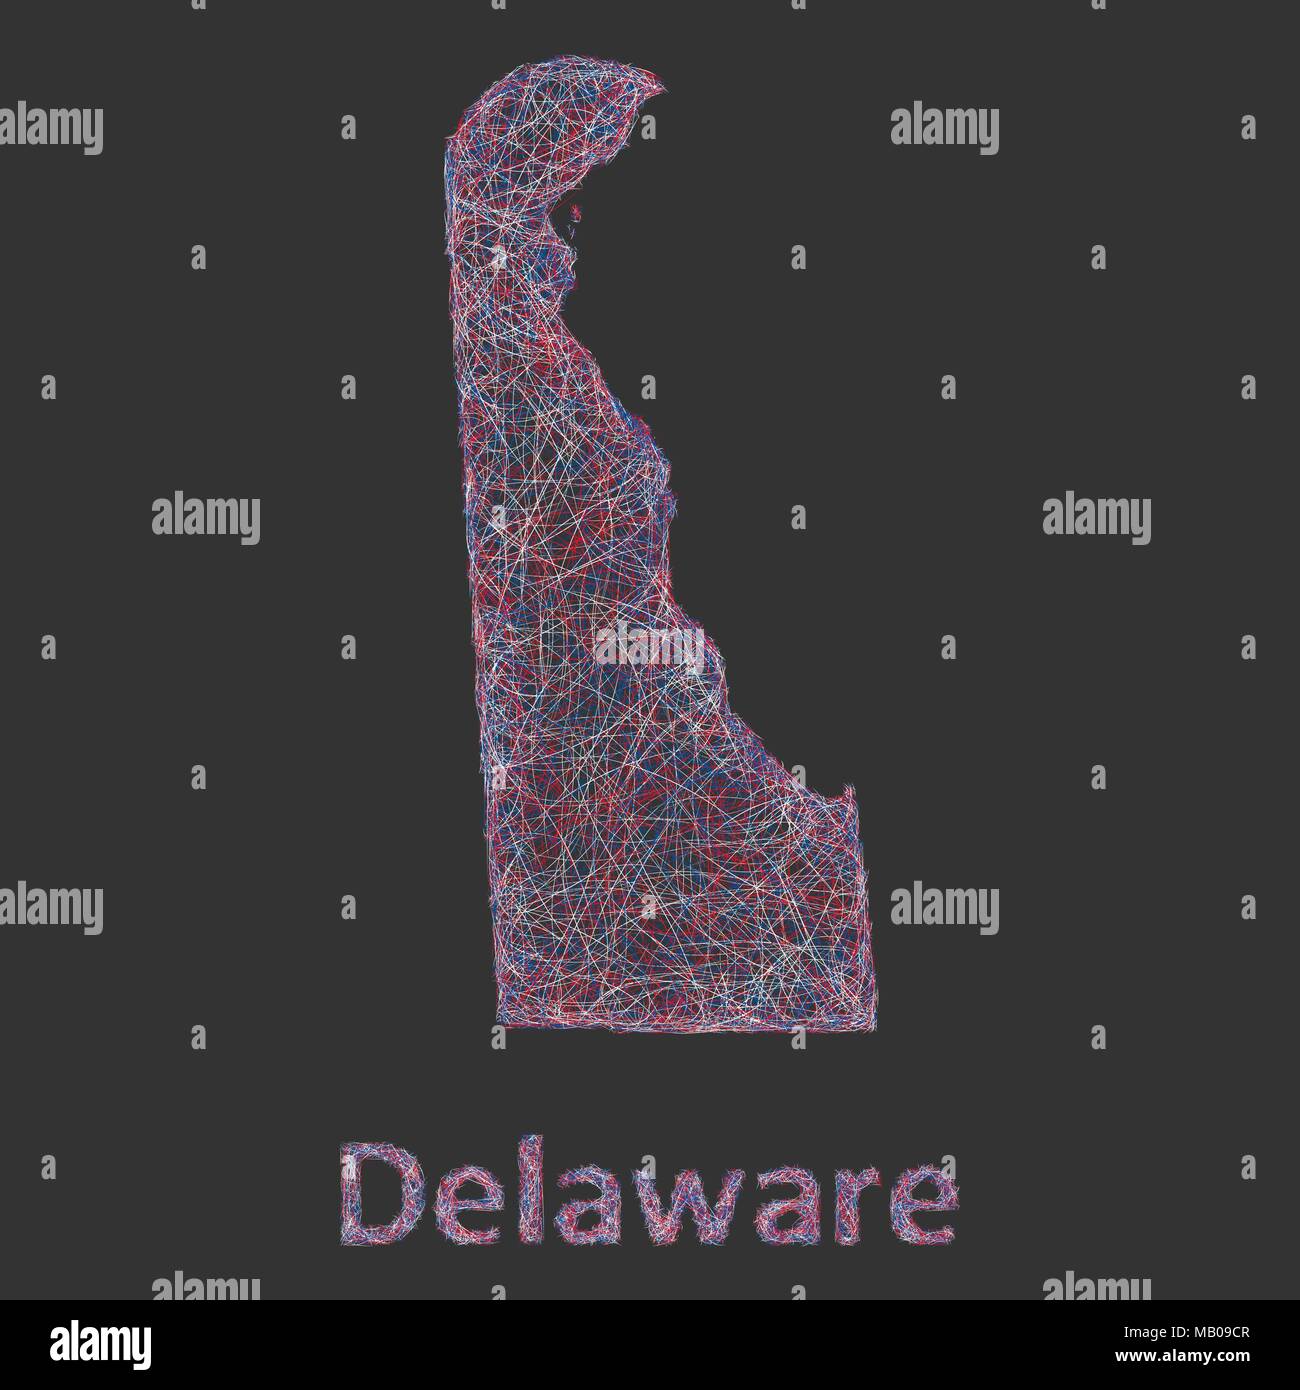 Delaware Linie Art Karte Stock Vektor